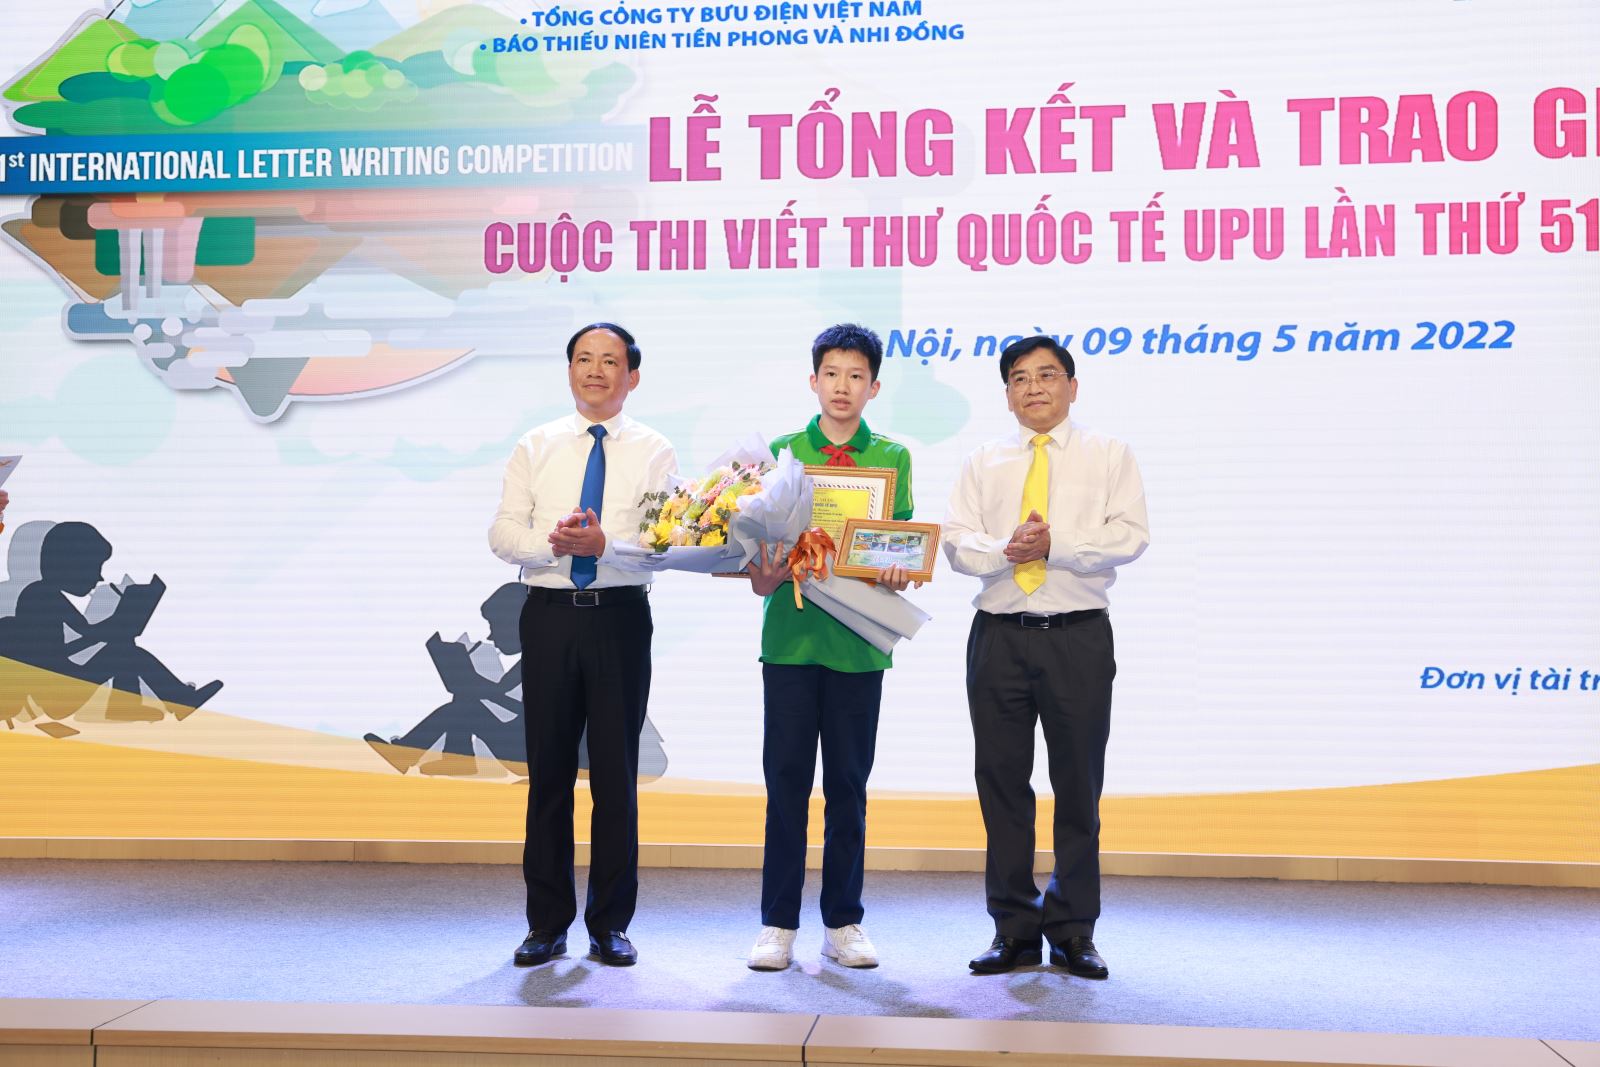 Nam sinh lớp 9 của Hà Nội giành giải nhất cuộc thi viết thư quốc tế UPU lần thứ 51 tại Việt Nam